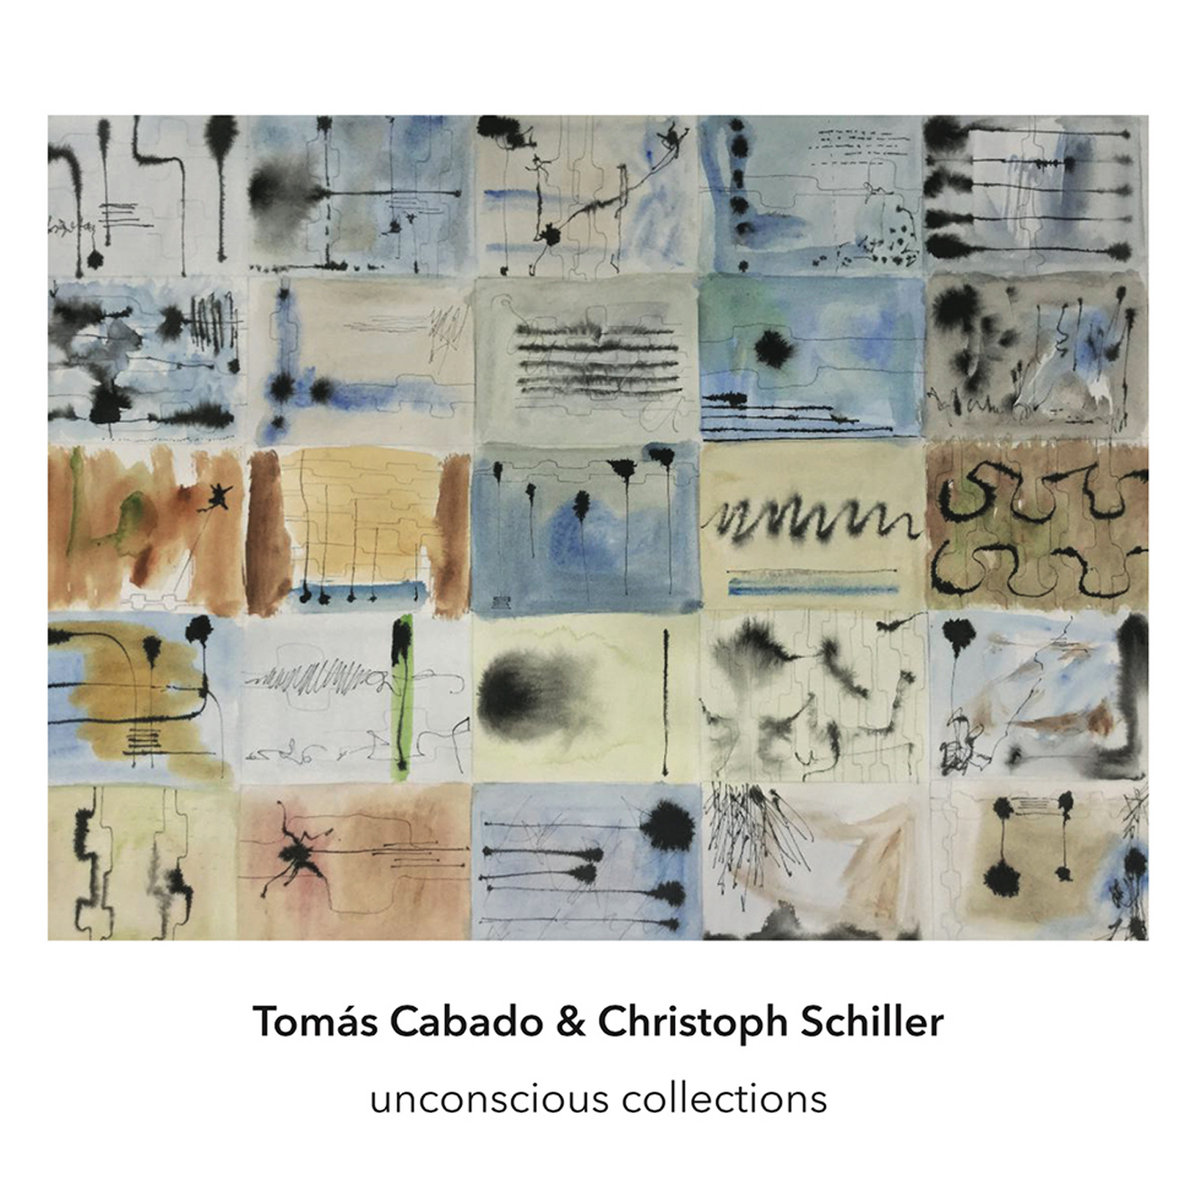 Unconcious Collections by Tomás Cabado